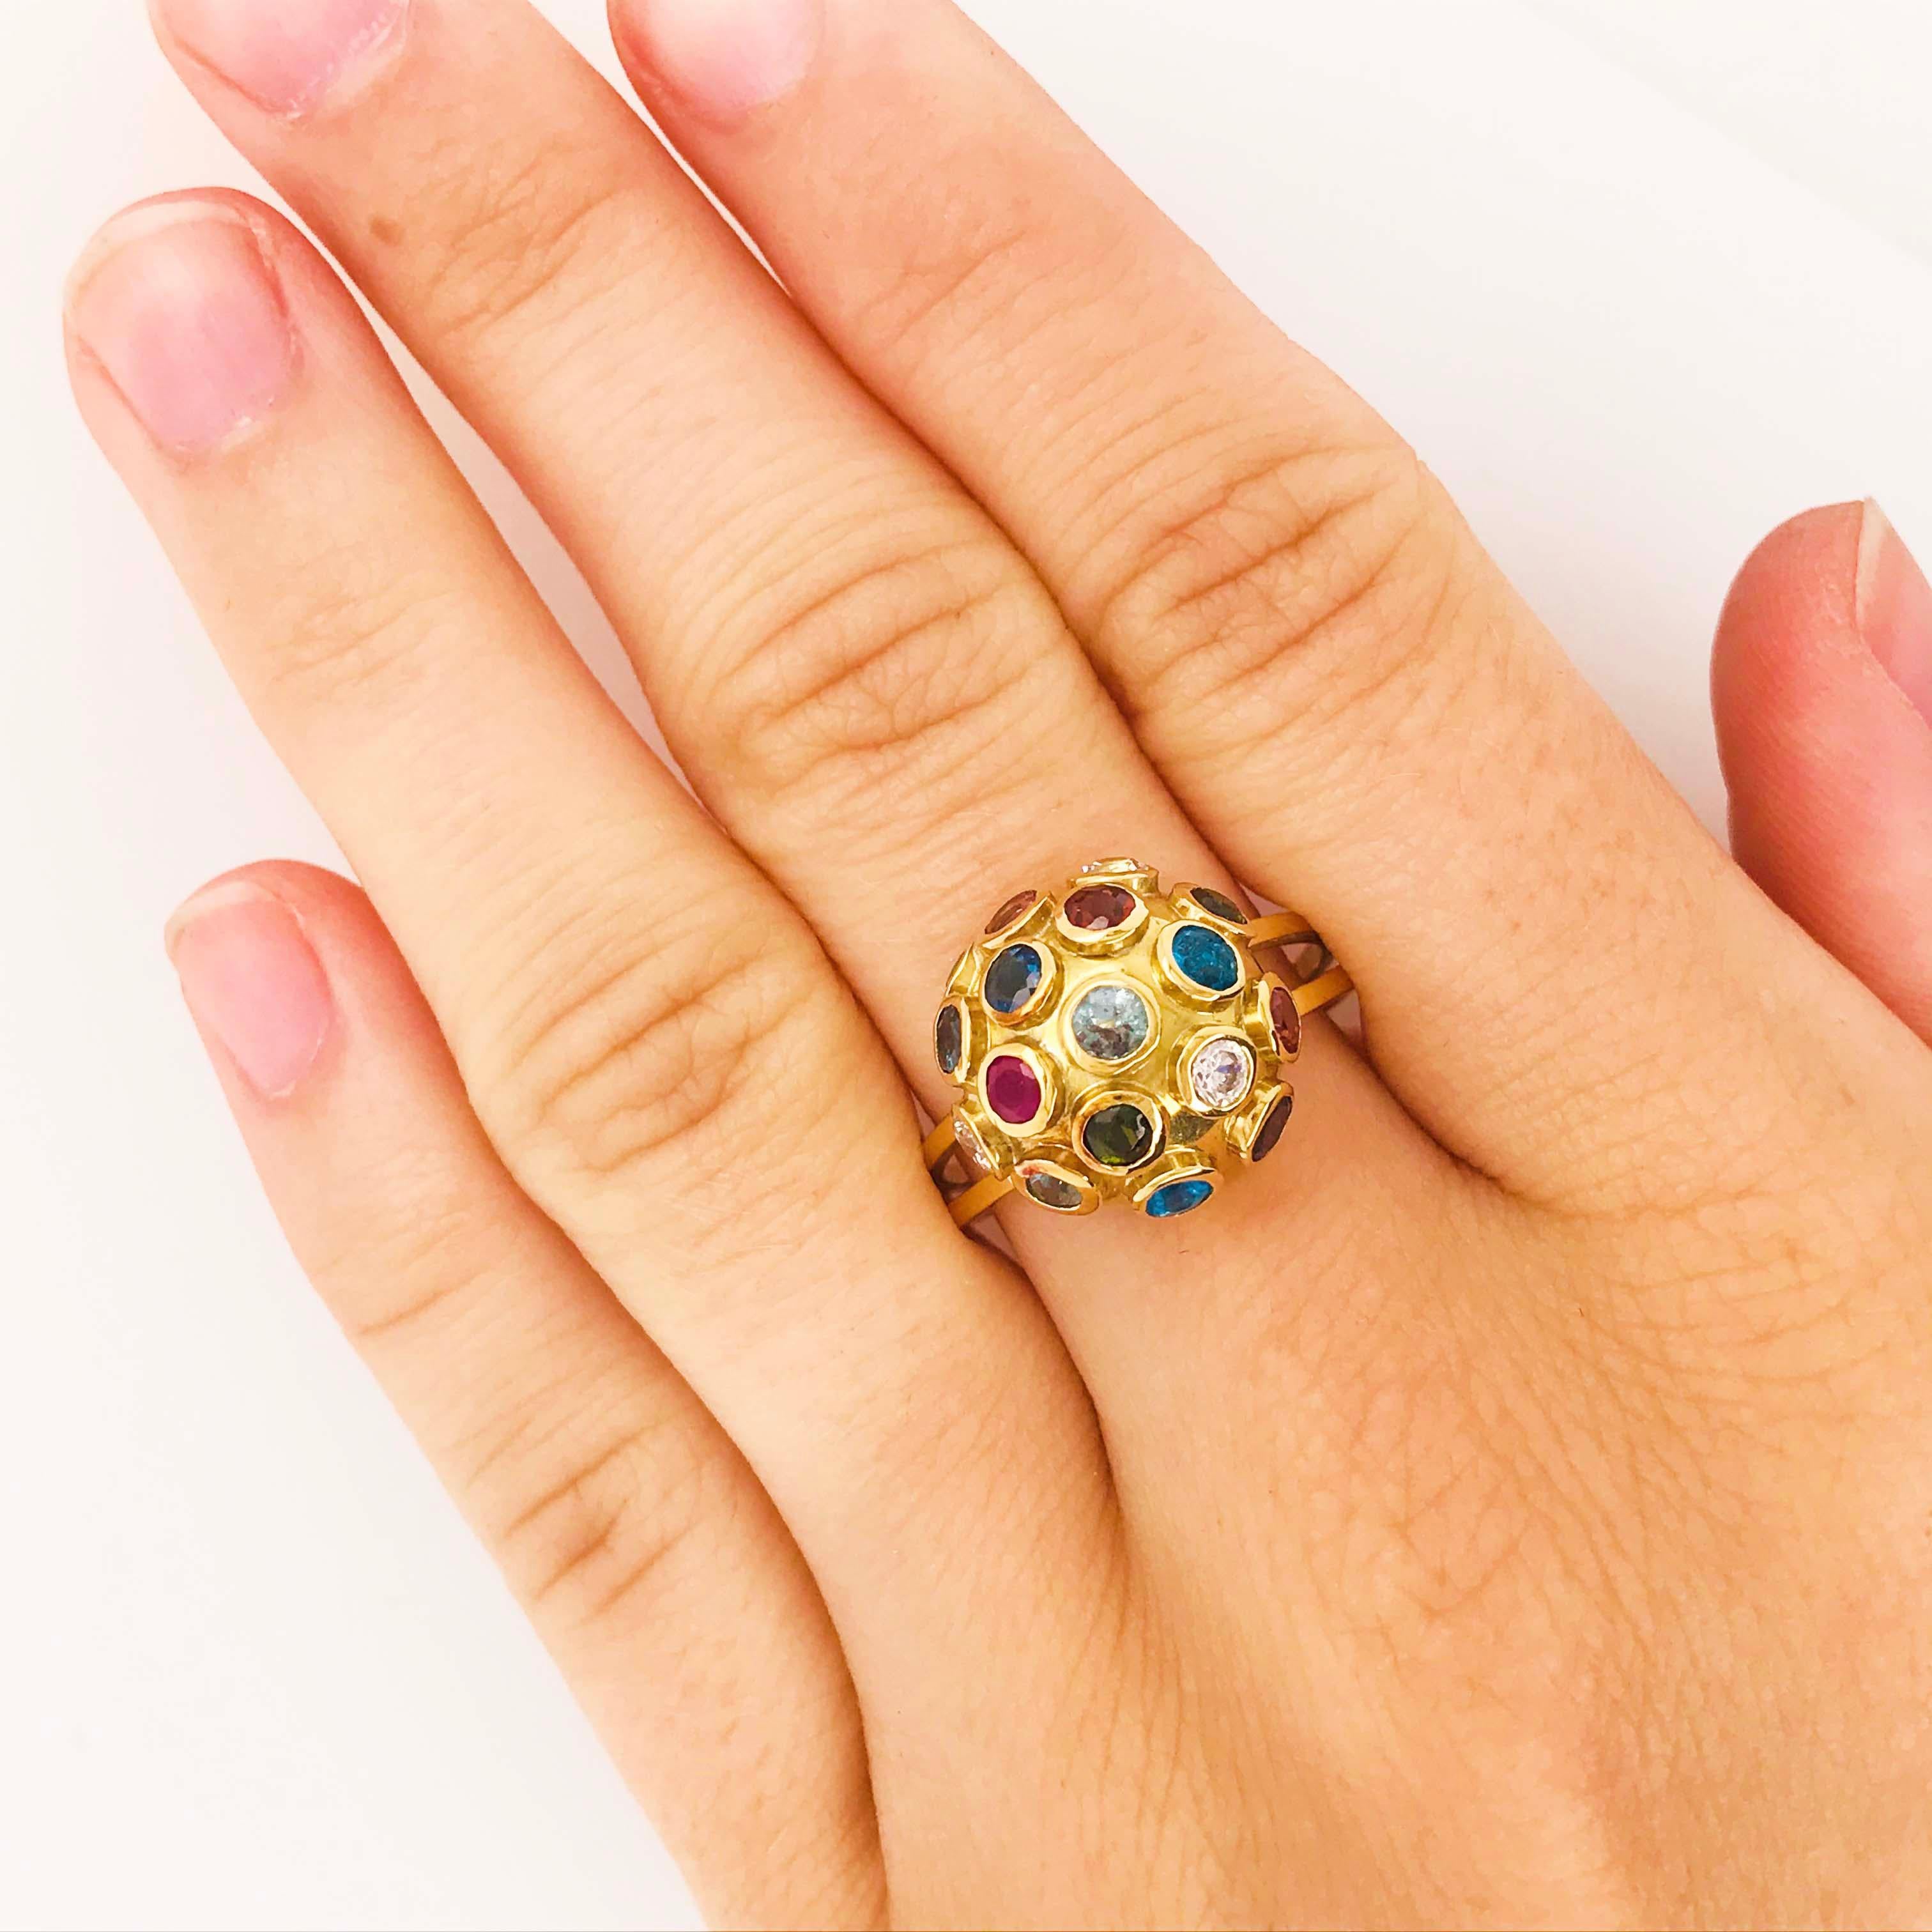 Der Ring mit echten Edelsteinen ist ein wunderschönes Schmuckstück. Hergestellt aus 18 Karat Gelbgold und echten Edelsteinen! Das 18-karätige Gold hat eine satte gelbe Farbe, die perfekt mit den natürlichen Edelsteinfarben kontrastiert. Der Ring hat